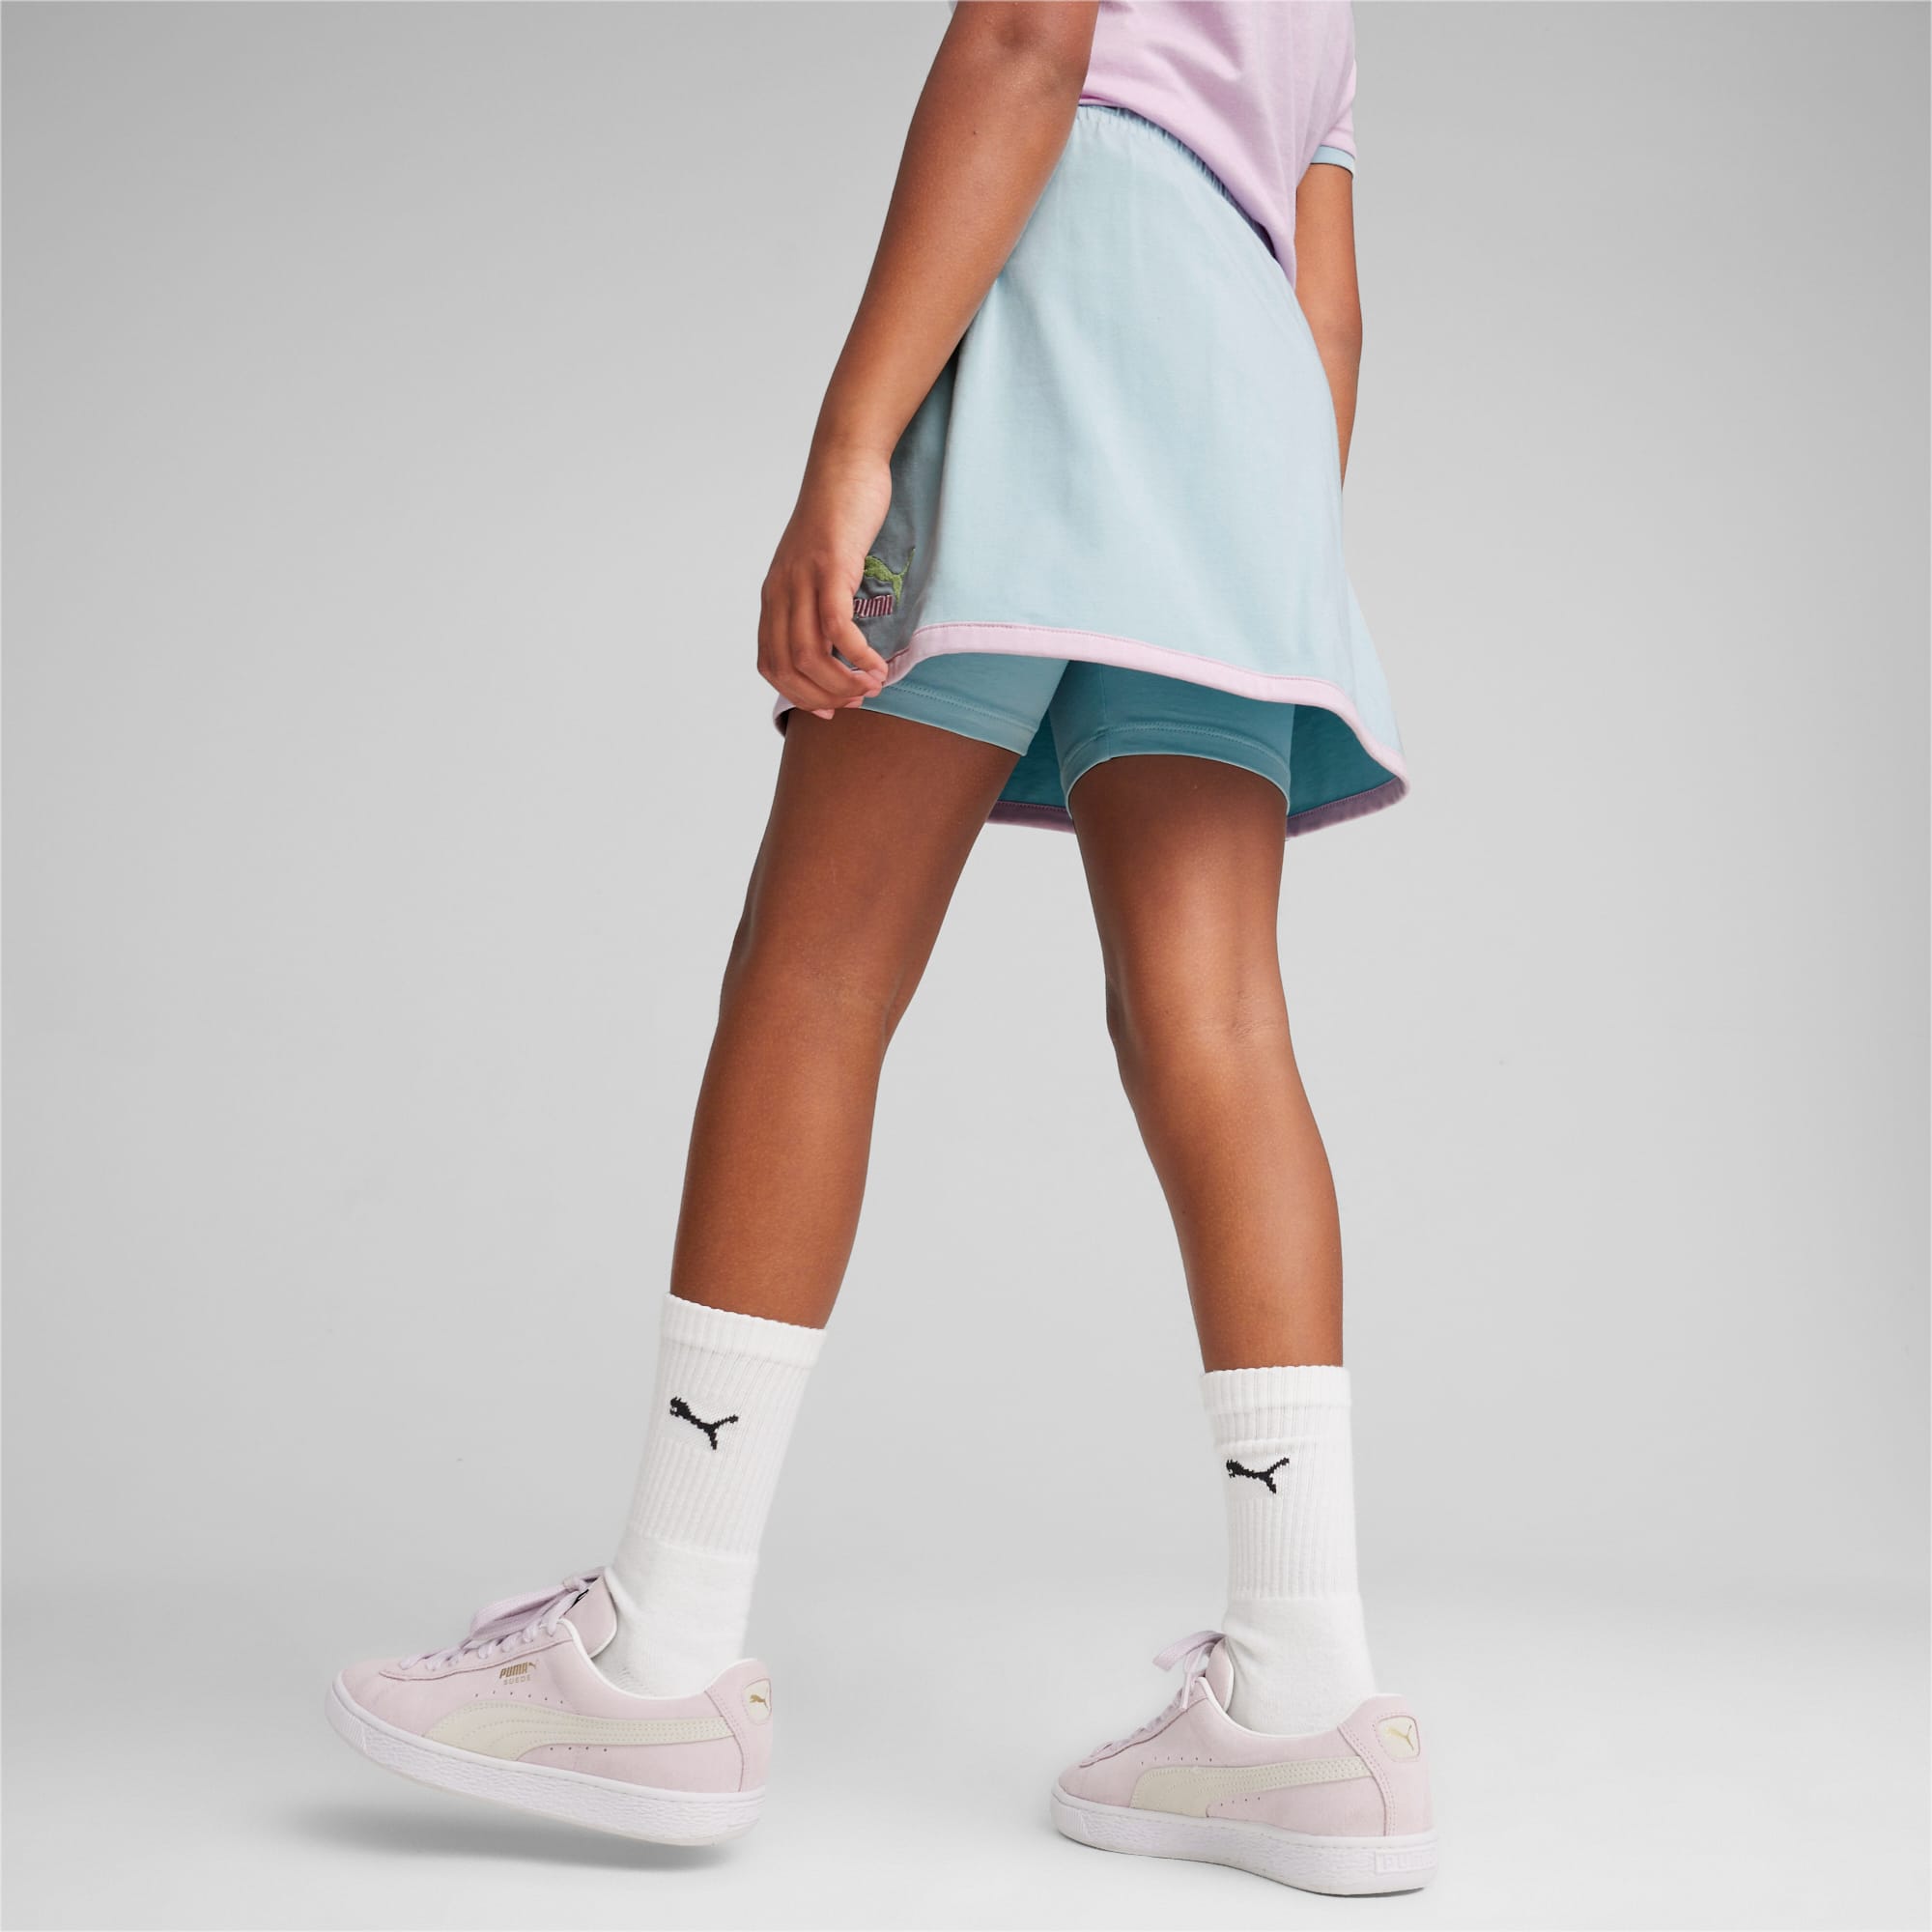 Falda Short Calza Tenis Mujer – Andesland